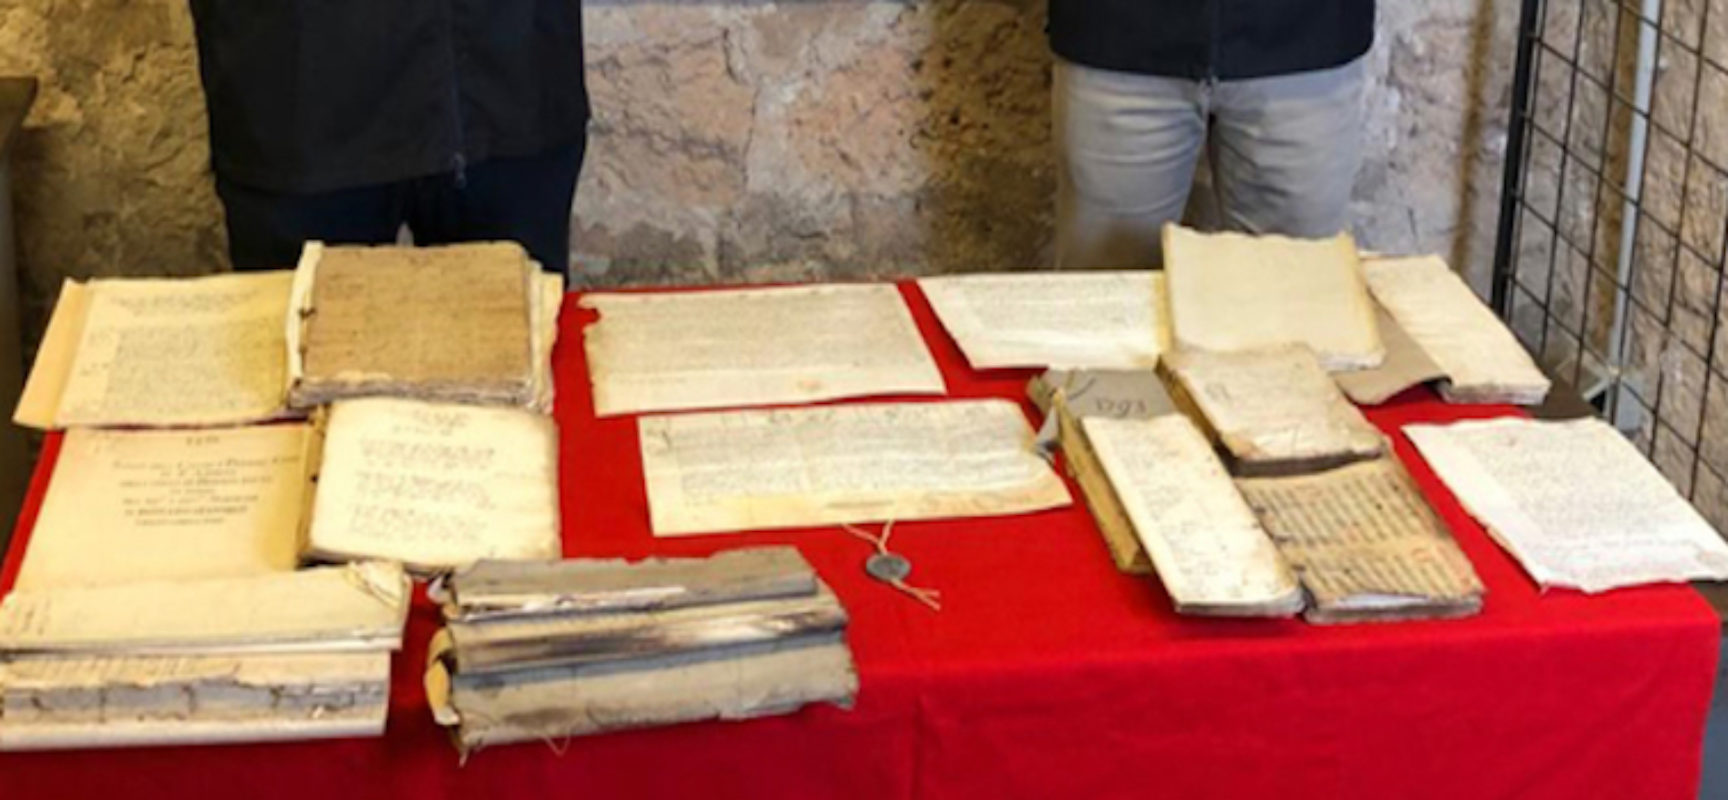 Rinvenuti documenti trafugati da archivio diocesano di Bisceglie per valore di 400mila euro